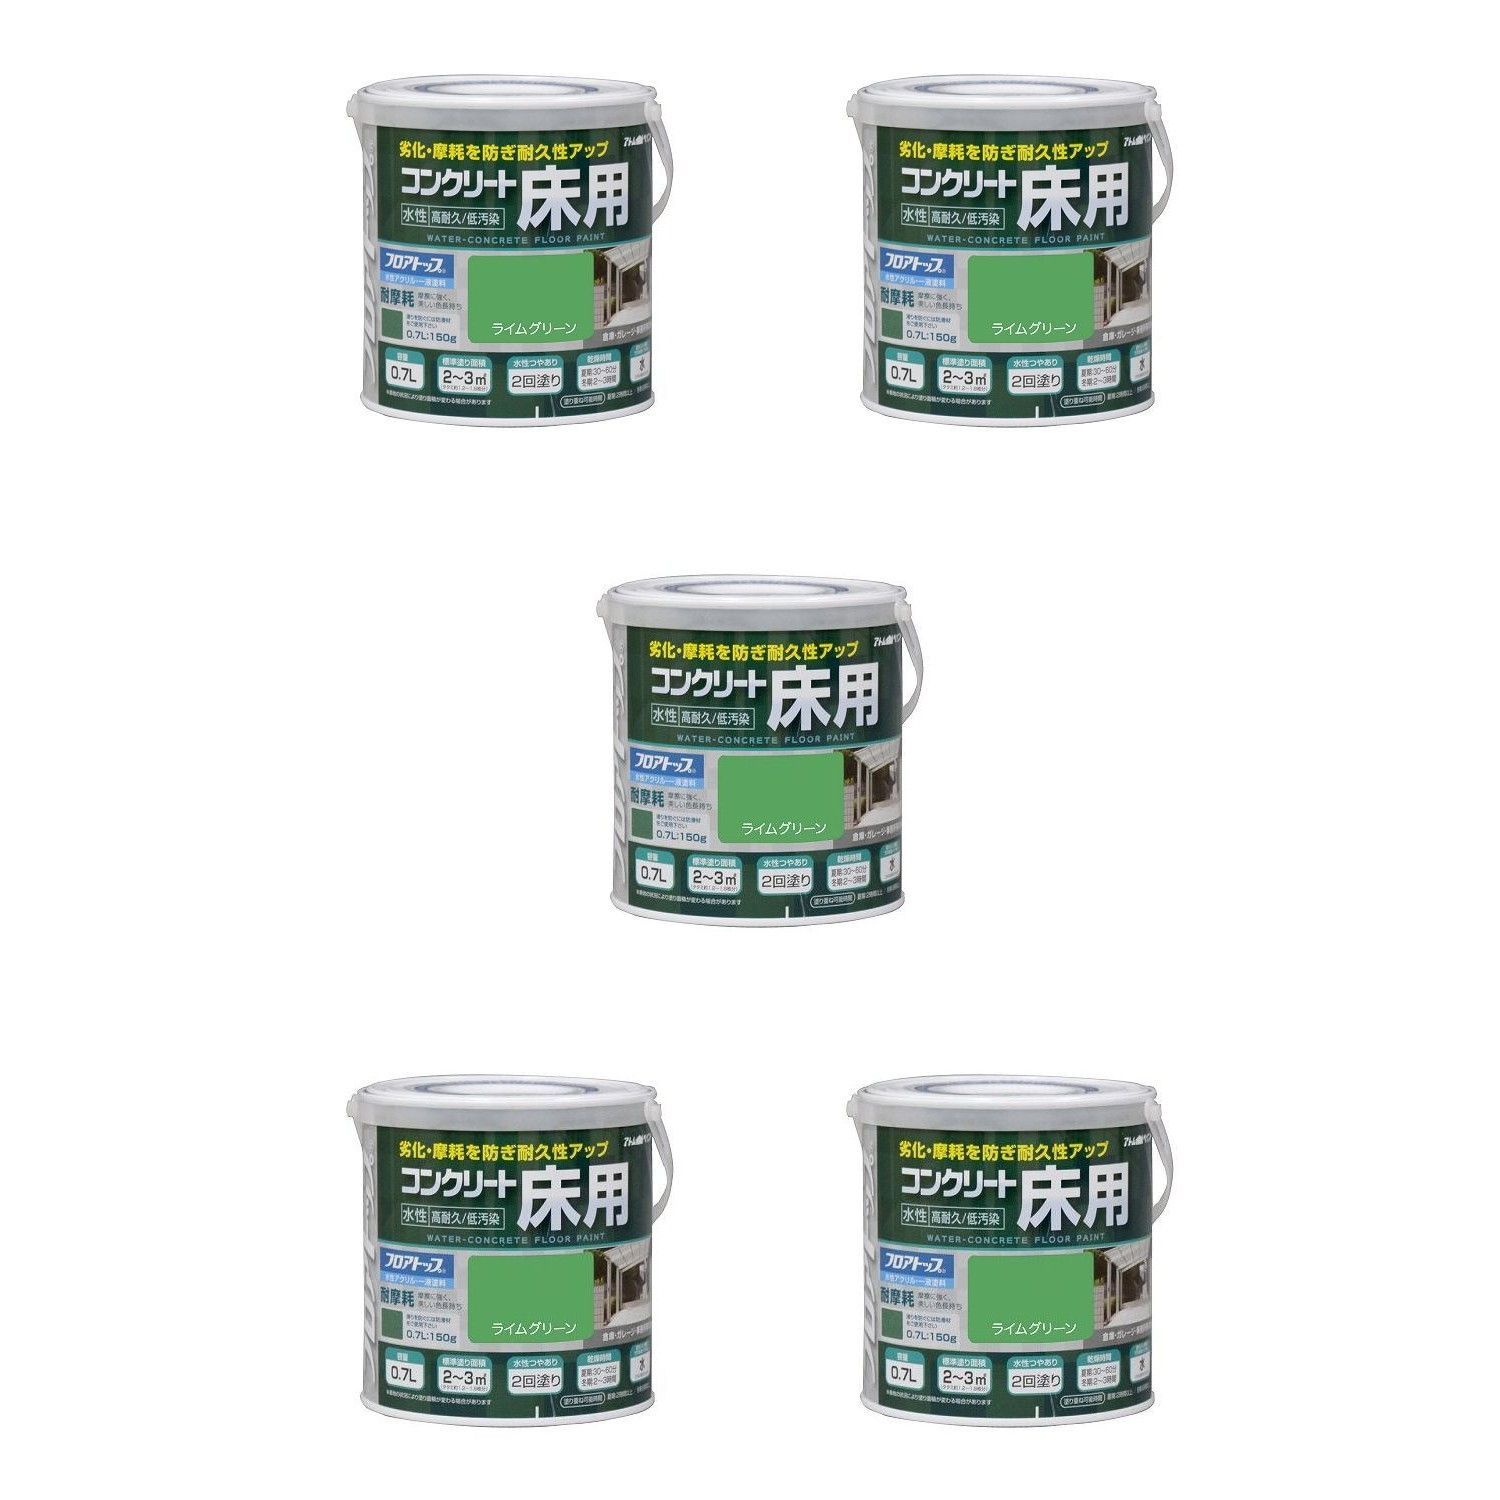 アトムハウスペイント - 水性コンクリート床用フロアトップ - 0.7L - ライムグリーン 5缶セット【BT-59】